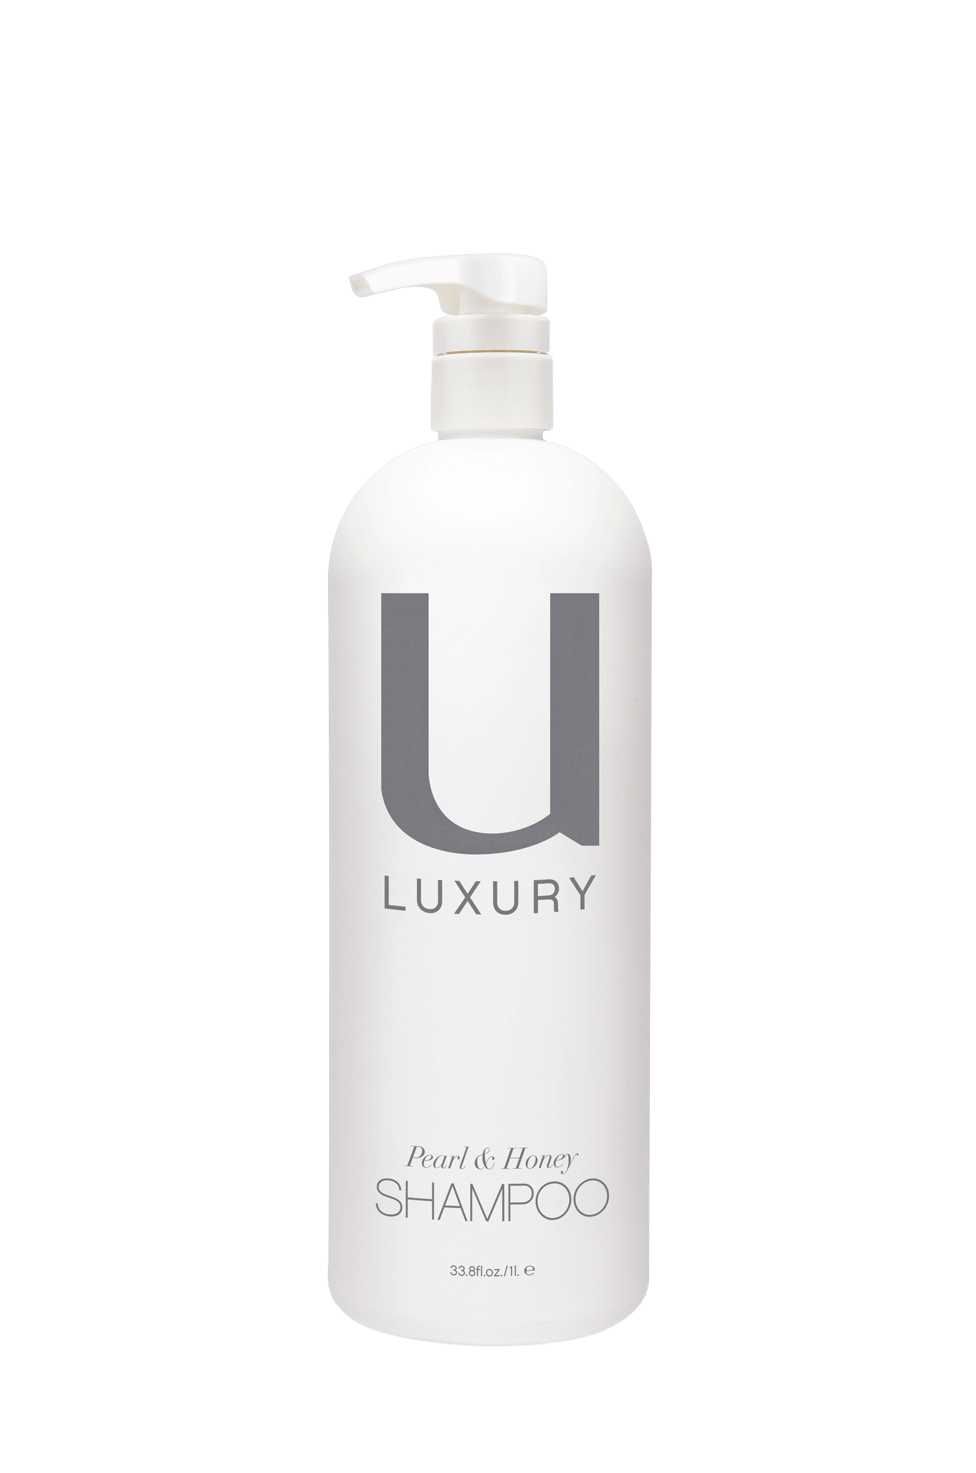 Unite U Luxury Shampoo 33.8oz / 1 Litre